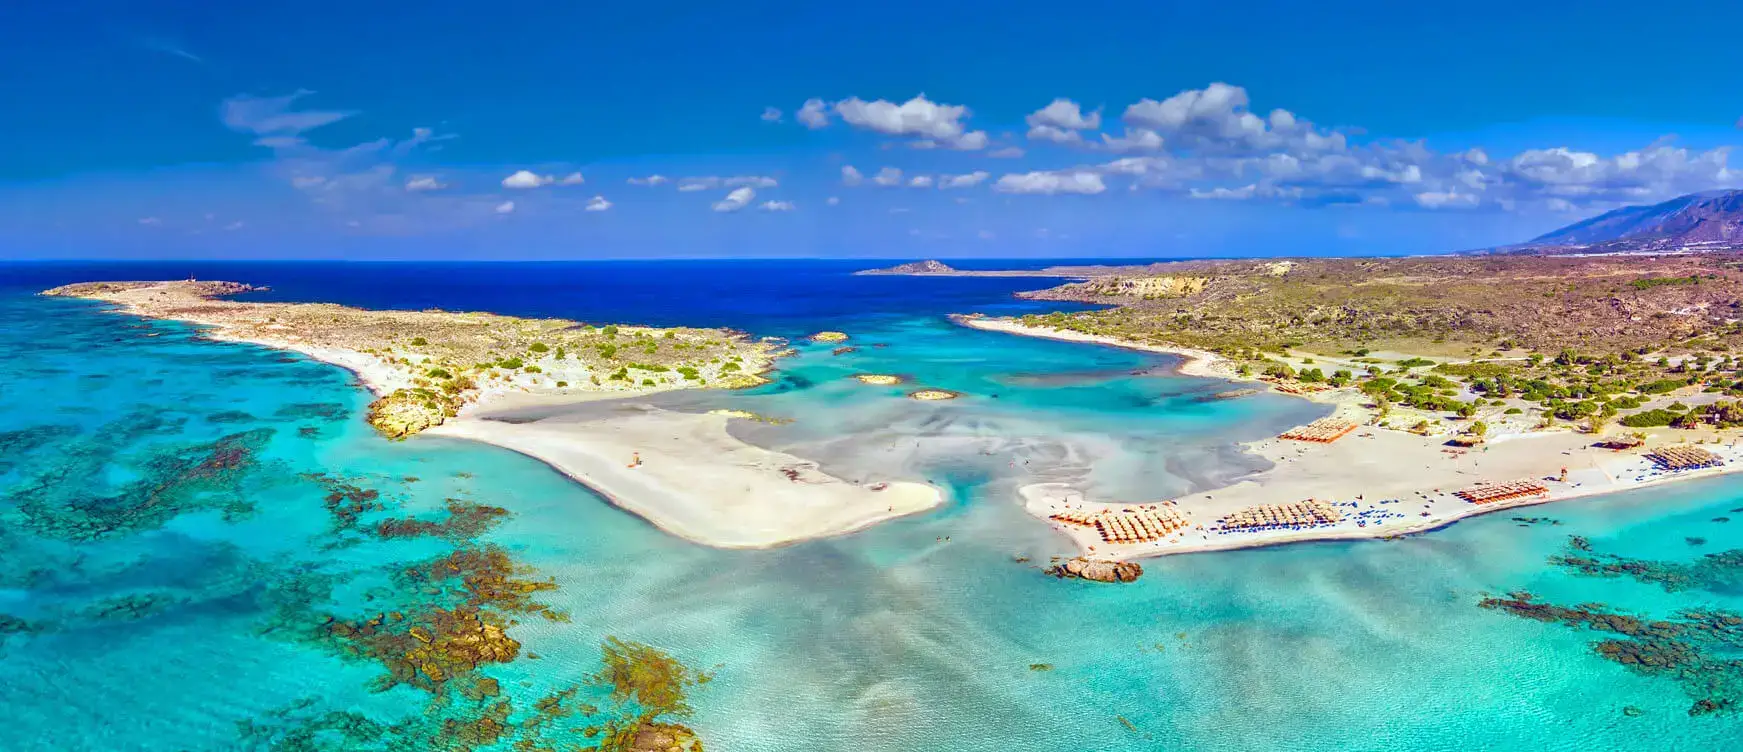 Yunan Adaları’na Kapıda Vize Konusunda Son ve Güncel Bilgiler